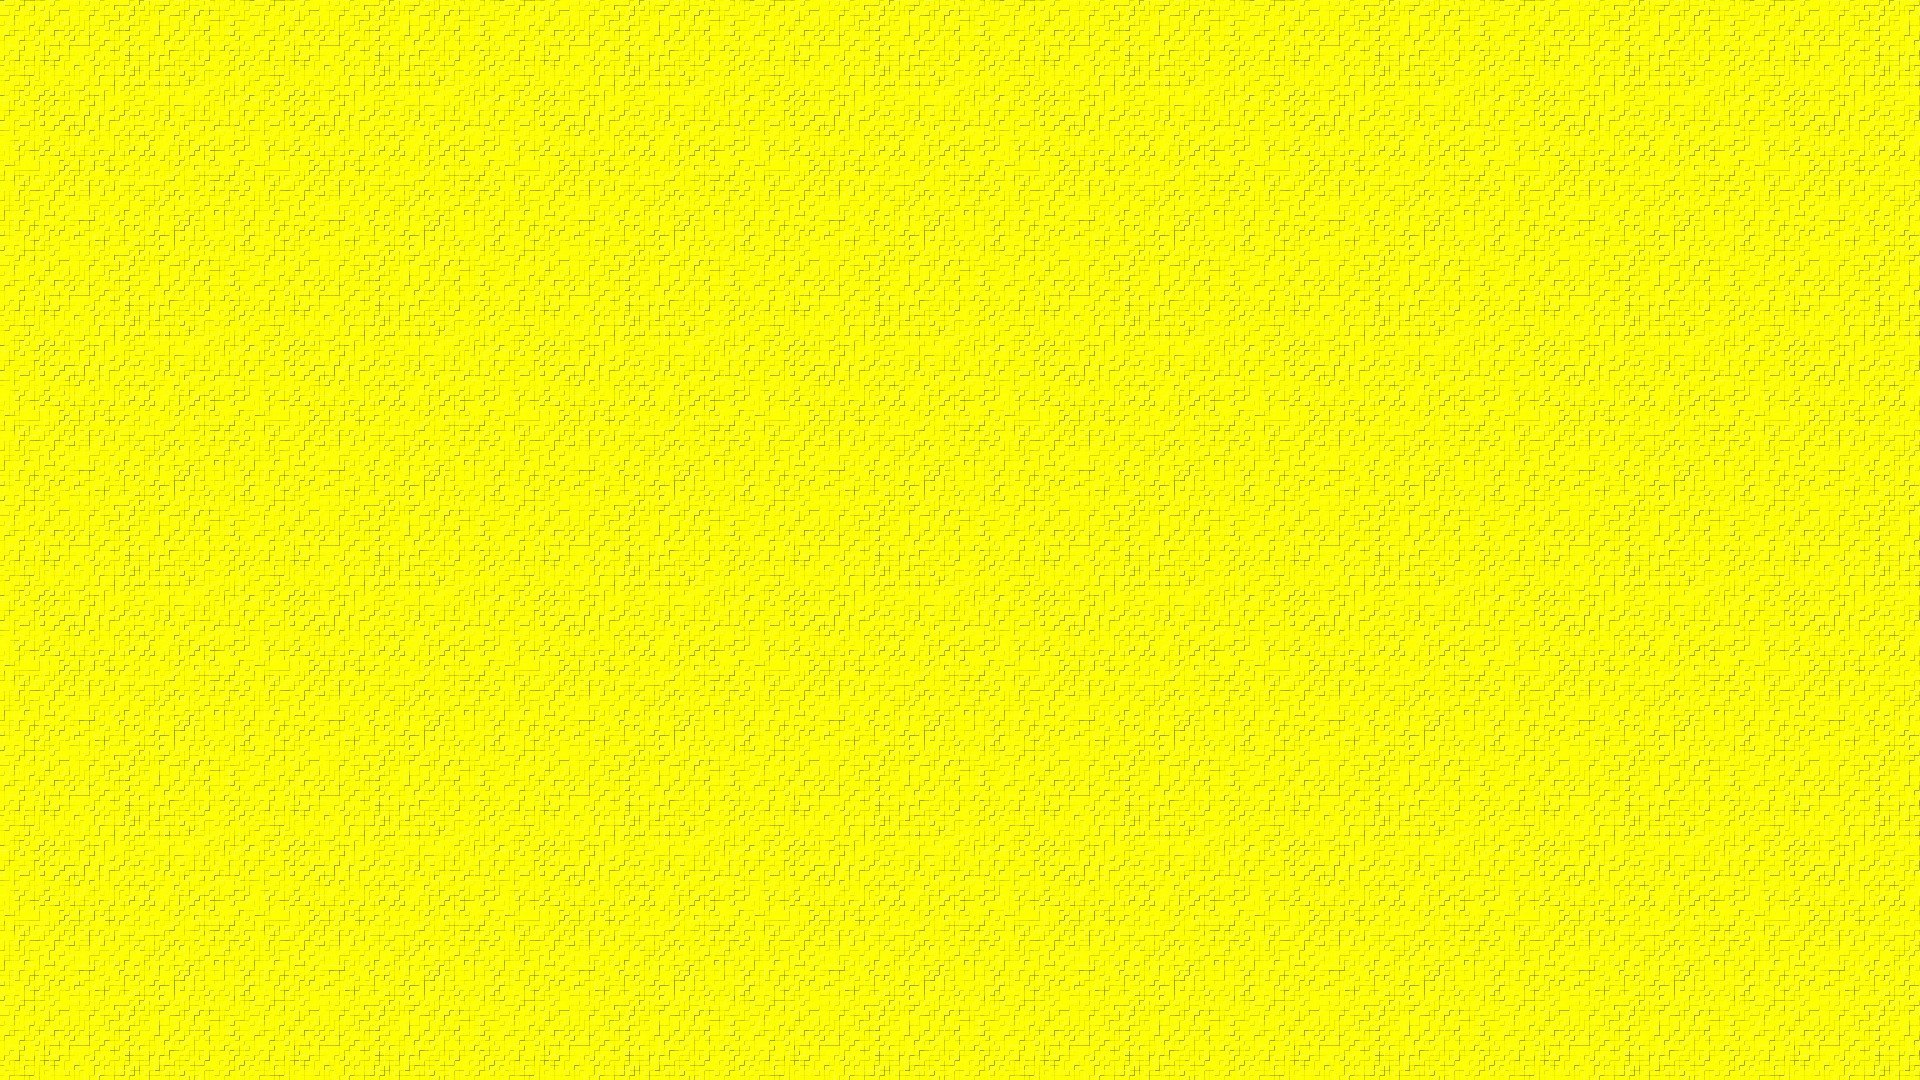 Фон желтый акварель